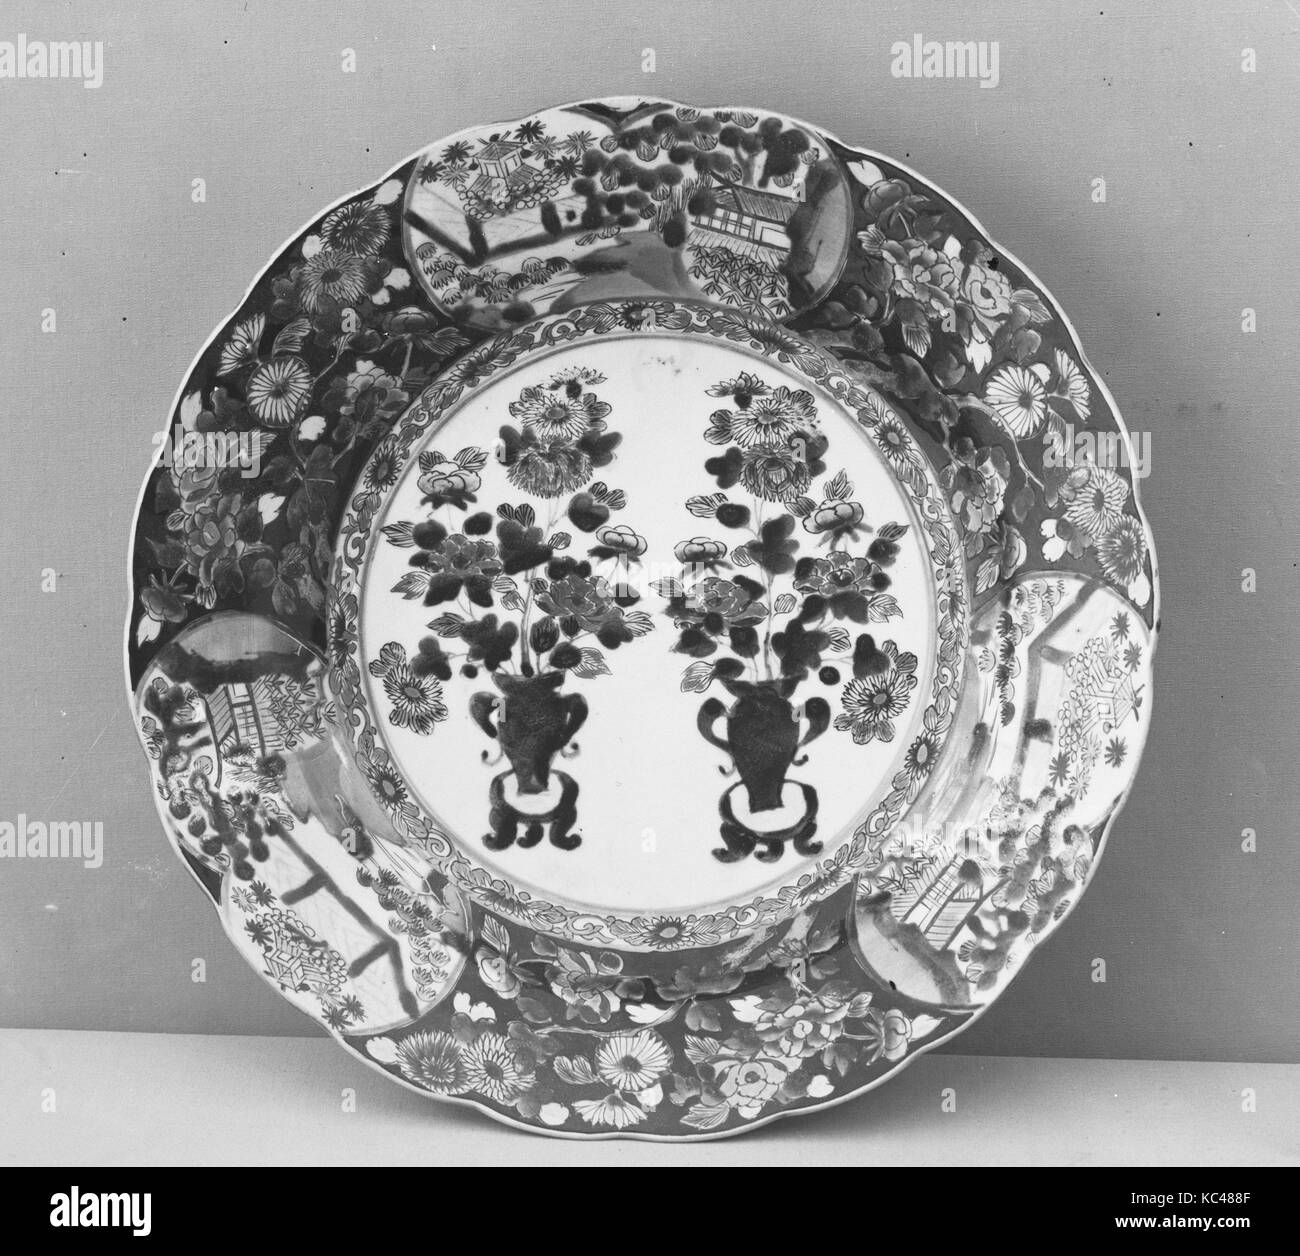 色絵牡丹菊風景文大皿, grand plat avec des vases à fleurs et paysages en cartouches, fin 17ème-début du 18e siècle Banque D'Images